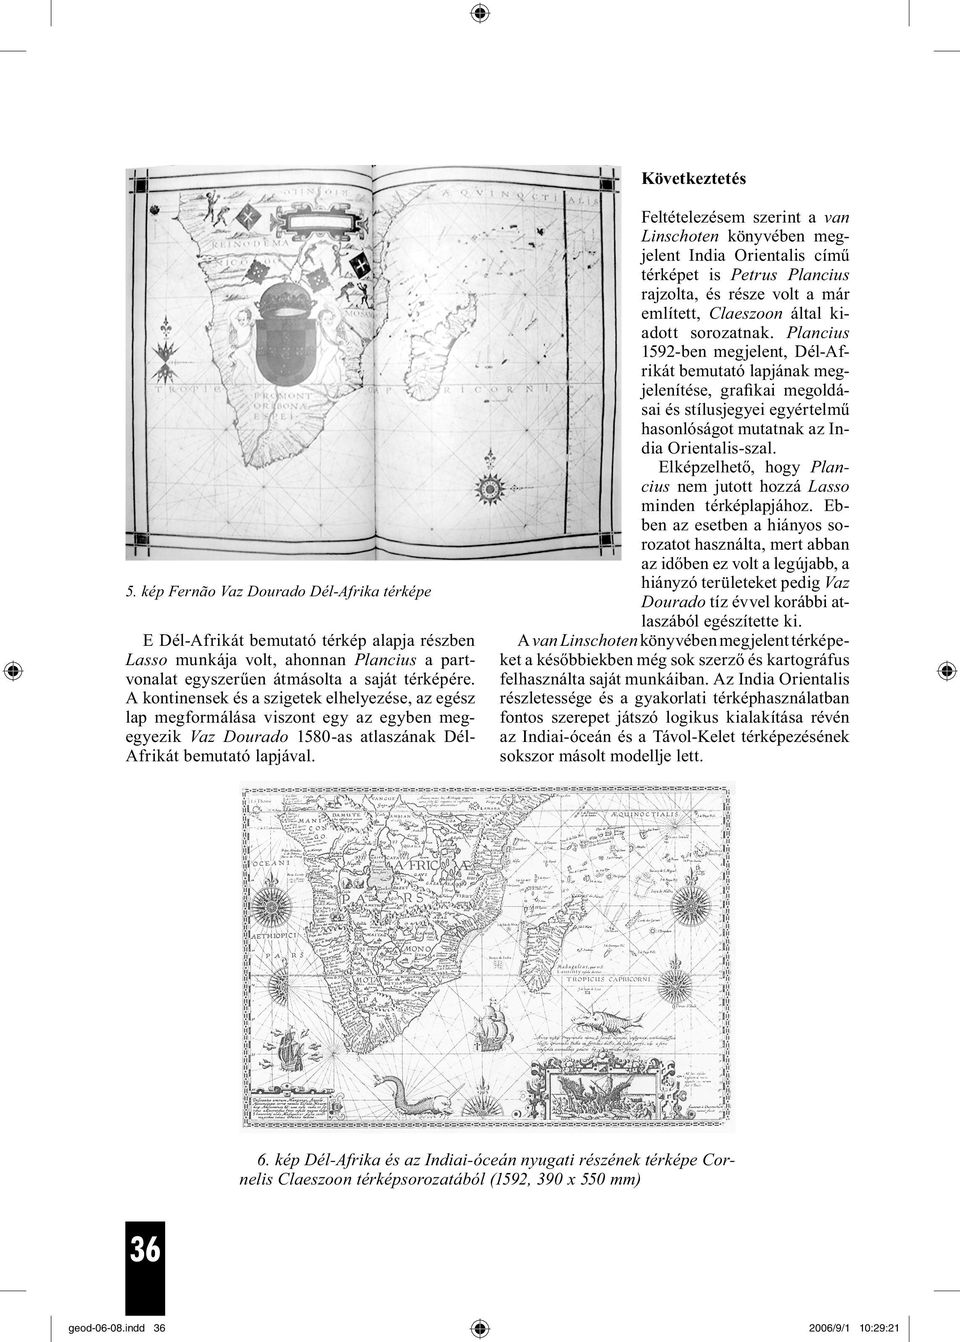 Feltételezésem szerint a van Linschoten könyvében megjelent India Orientalis című térképet is Petrus Plancius rajzolta, és része volt a már említett, Claeszoon által kiadott sorozatnak.